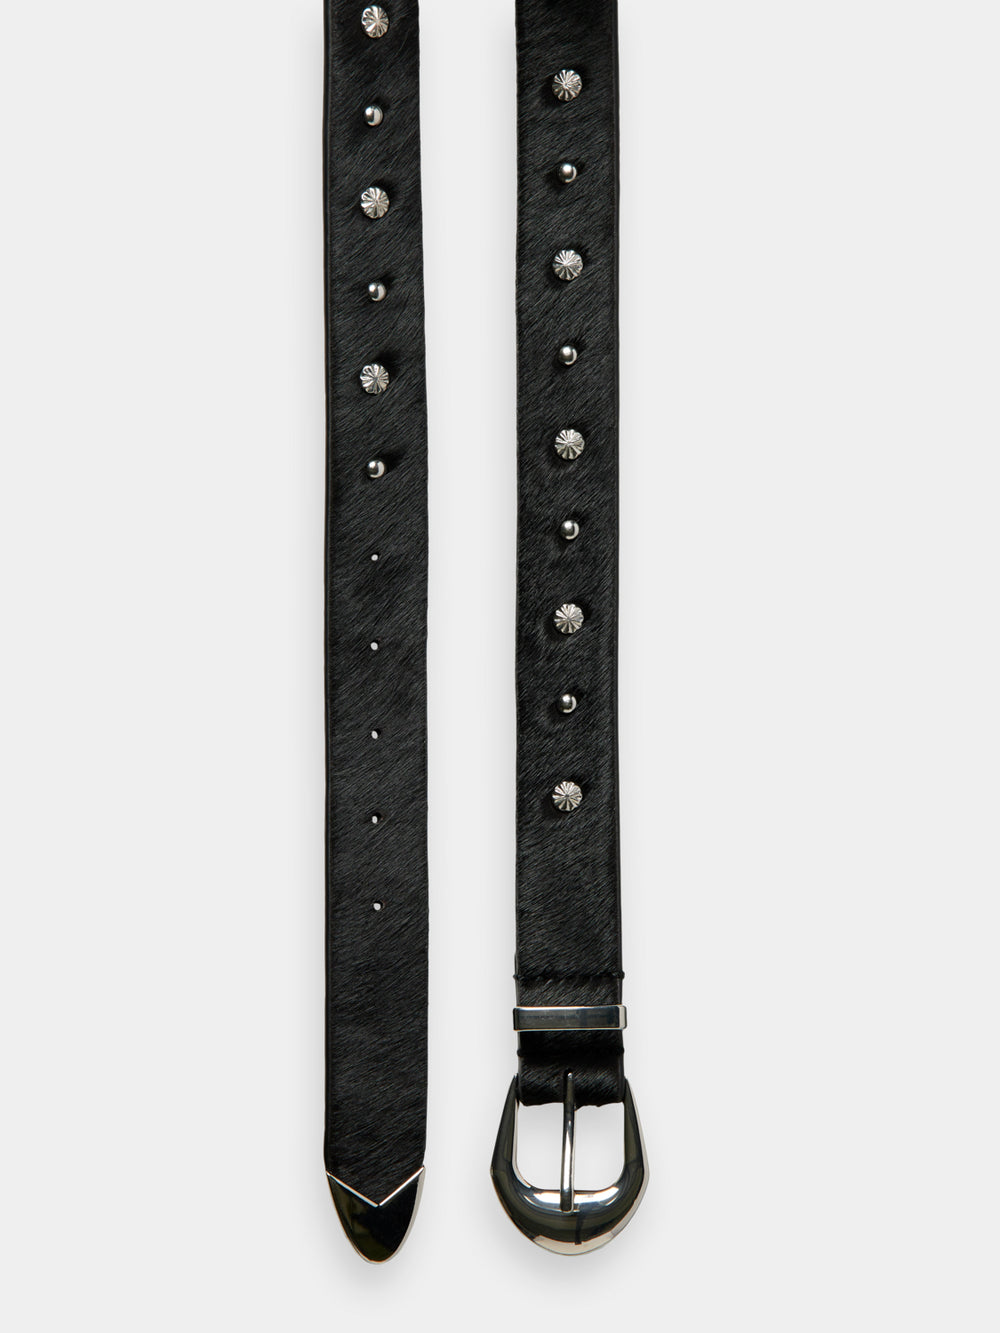 Studded leather belt - Scotch & Soda NZ